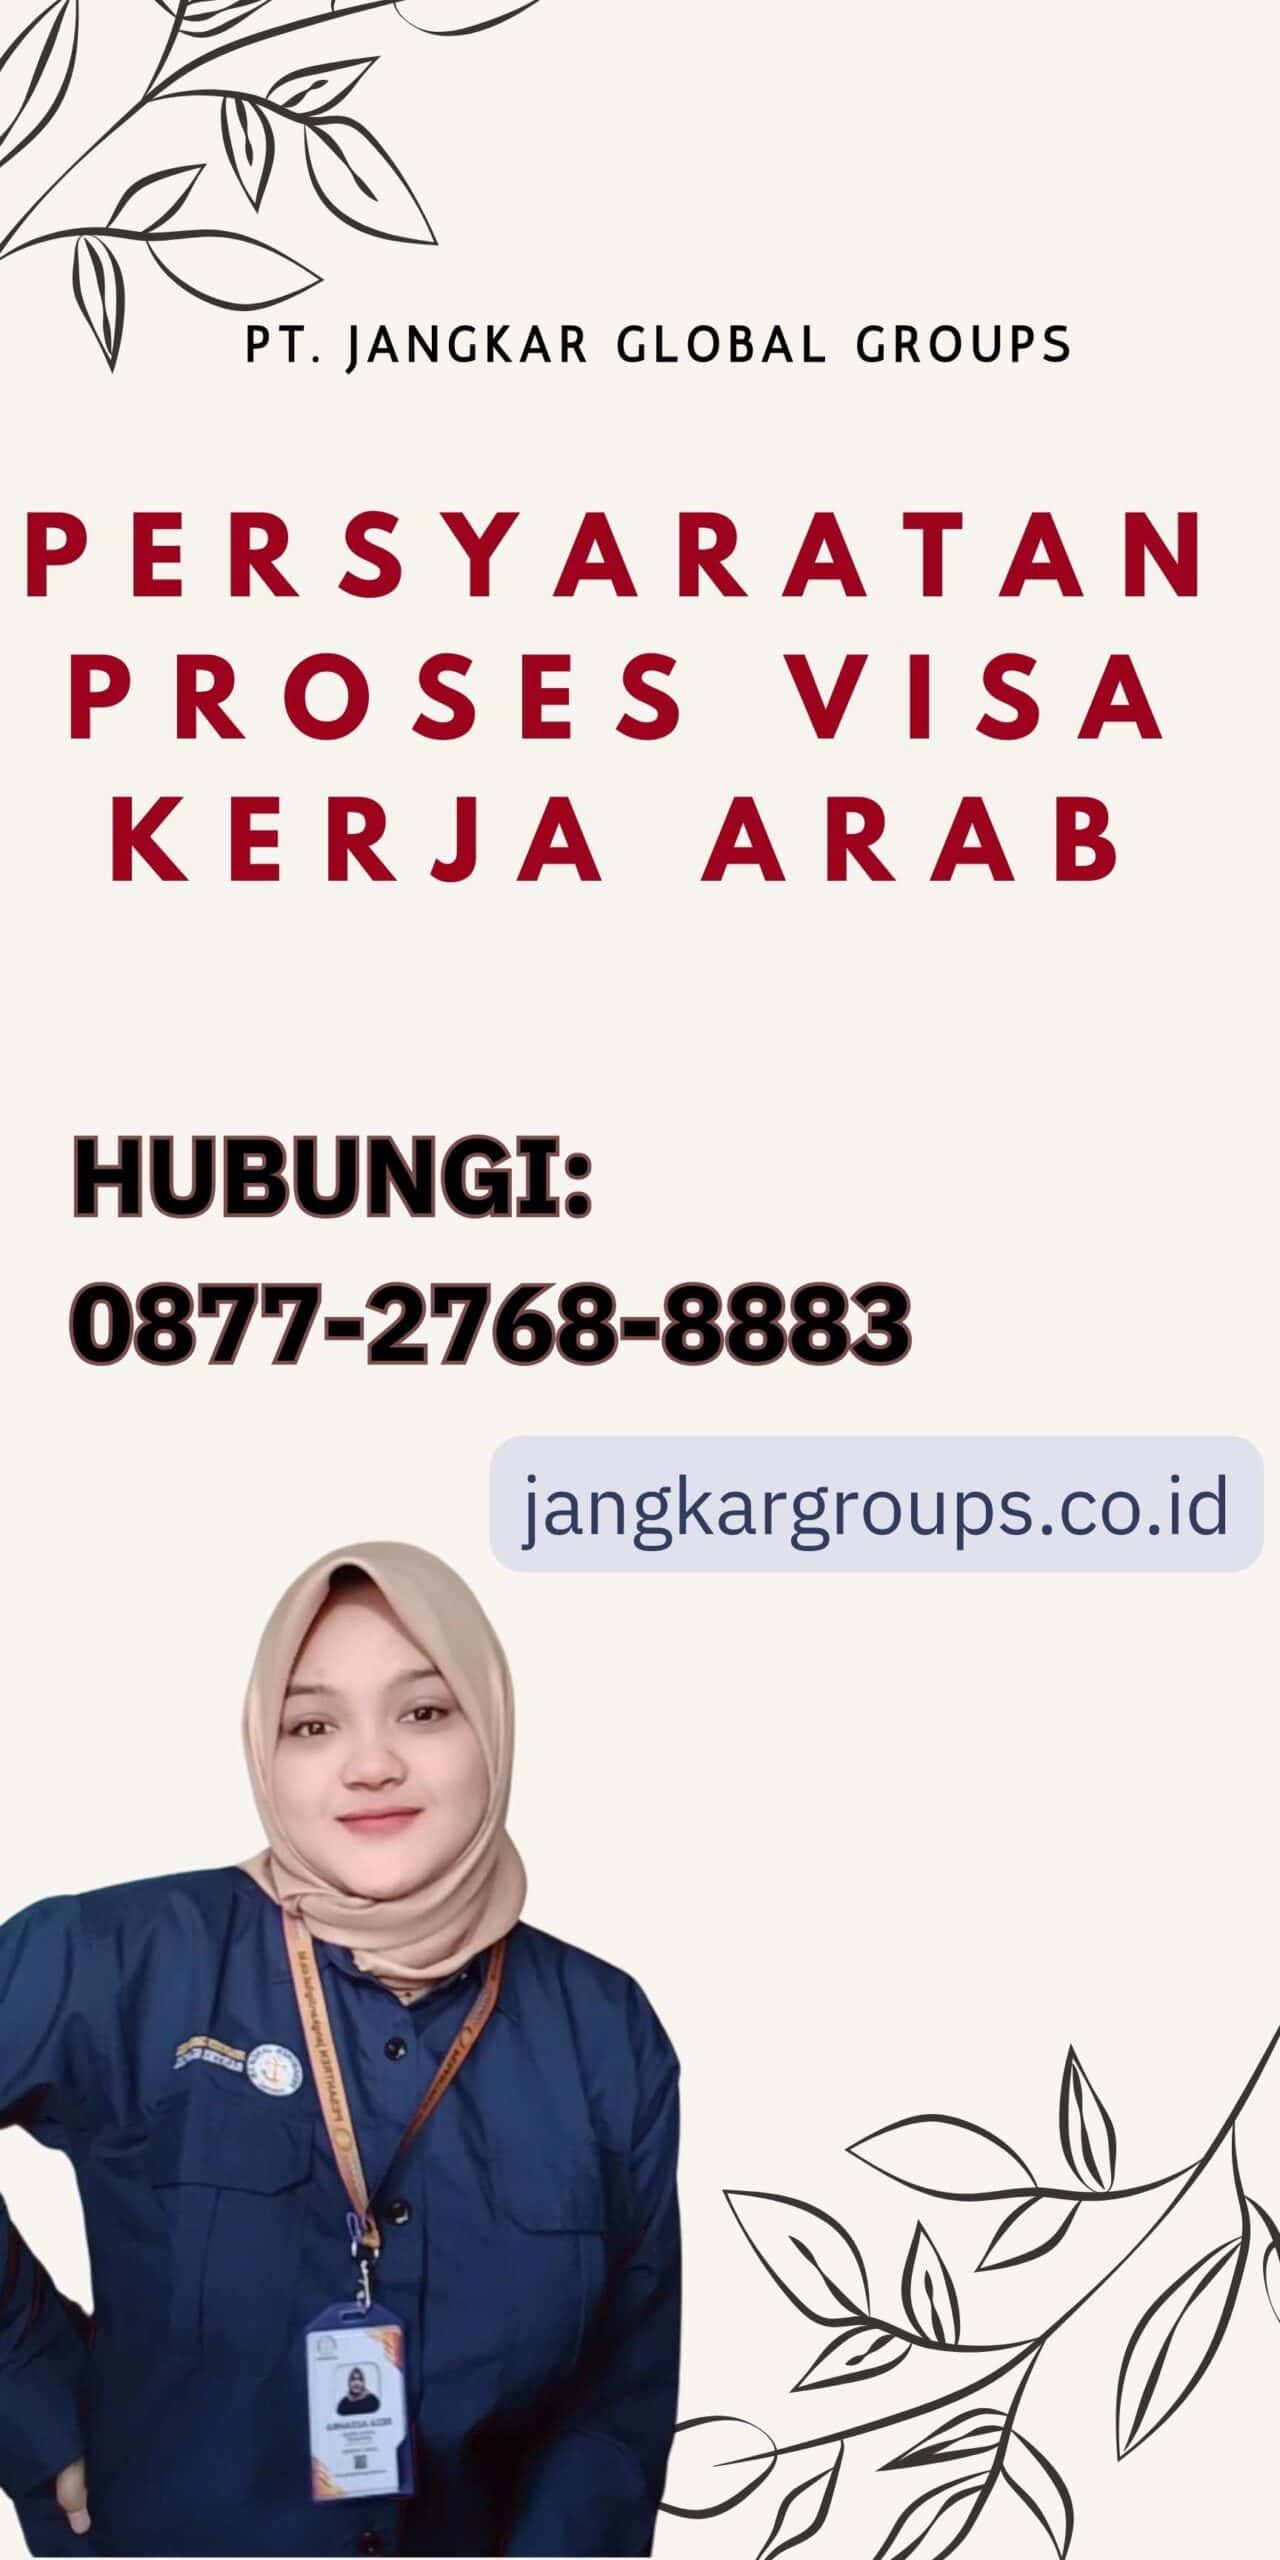 Persyaratan Proses Visa Kerja Arab